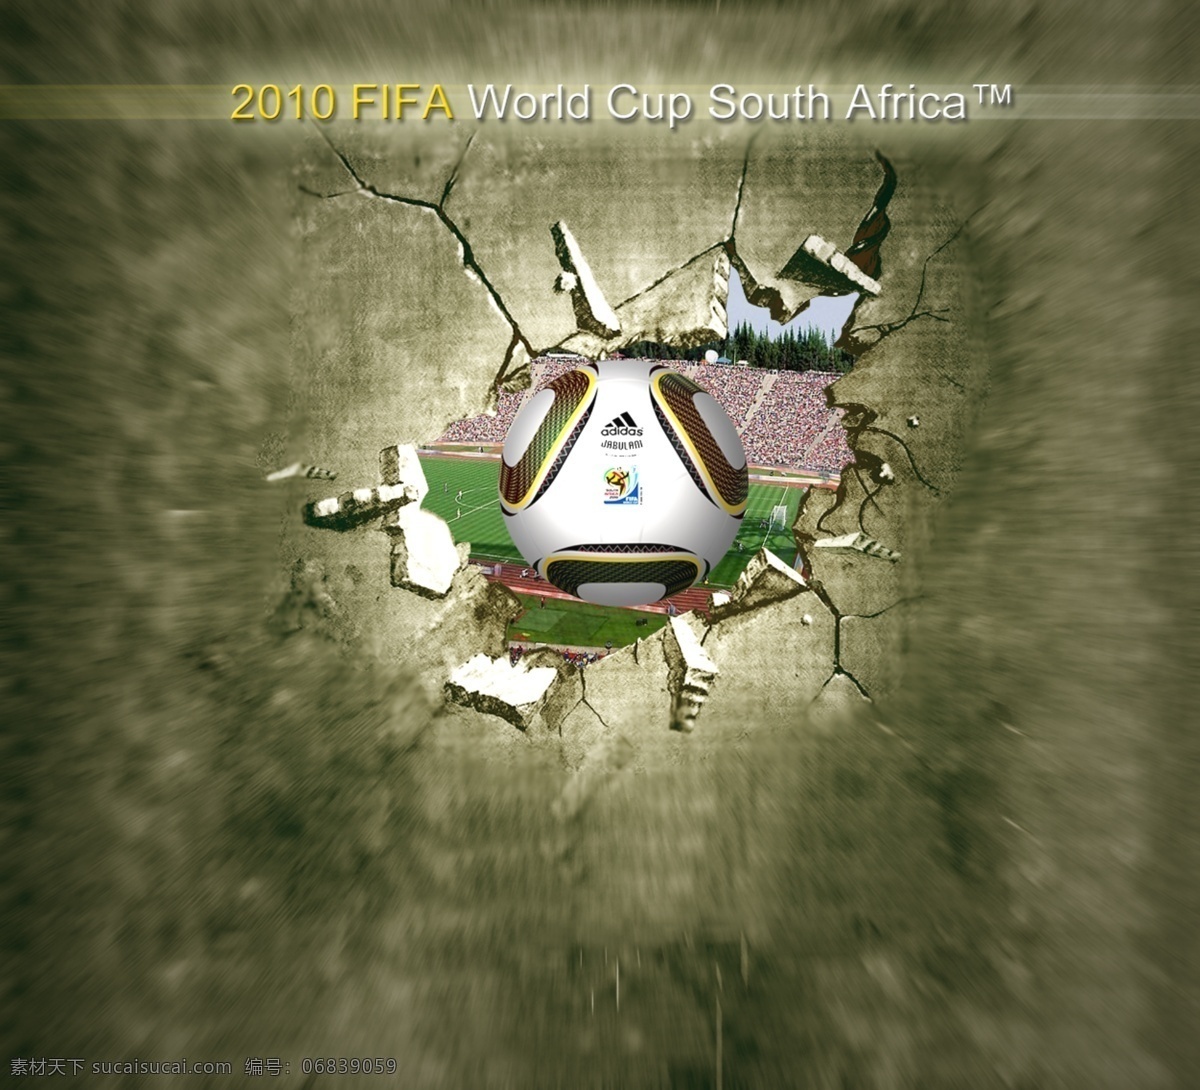 破墙的足球 模版下载 足球 破墙 世界杯 源文件 文化艺术 体育运动